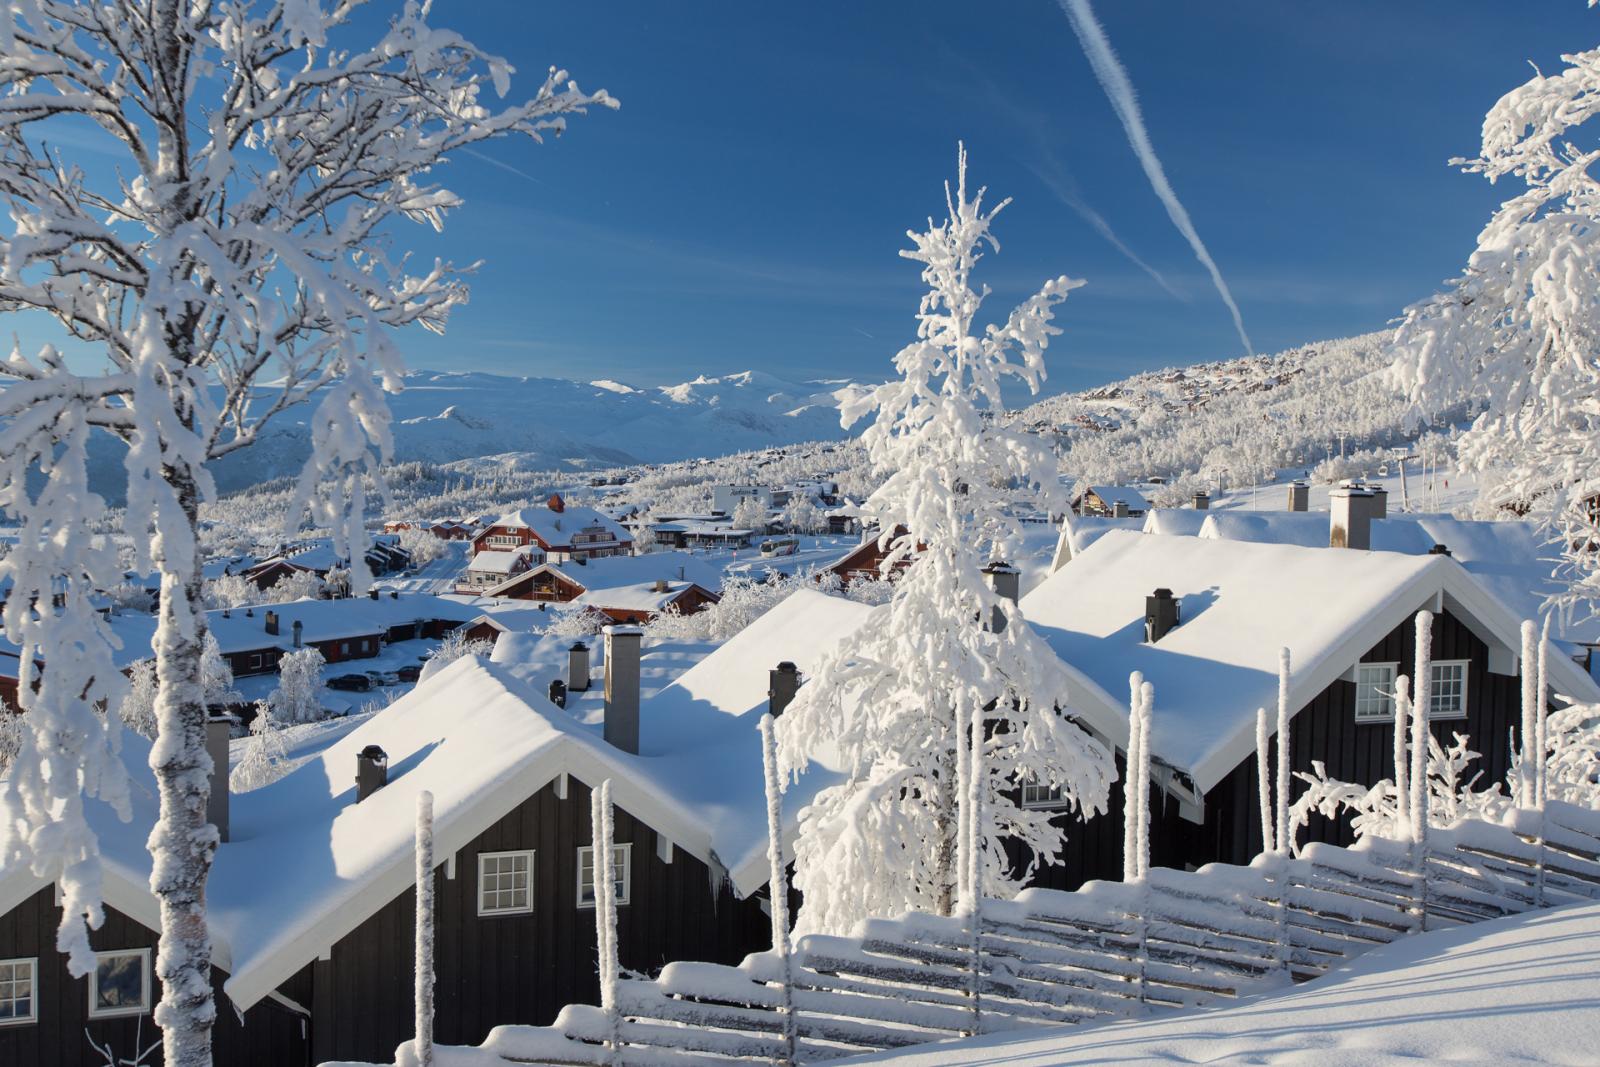 Hierom wil je komende winter naar Beitostølen in Noorwegen!